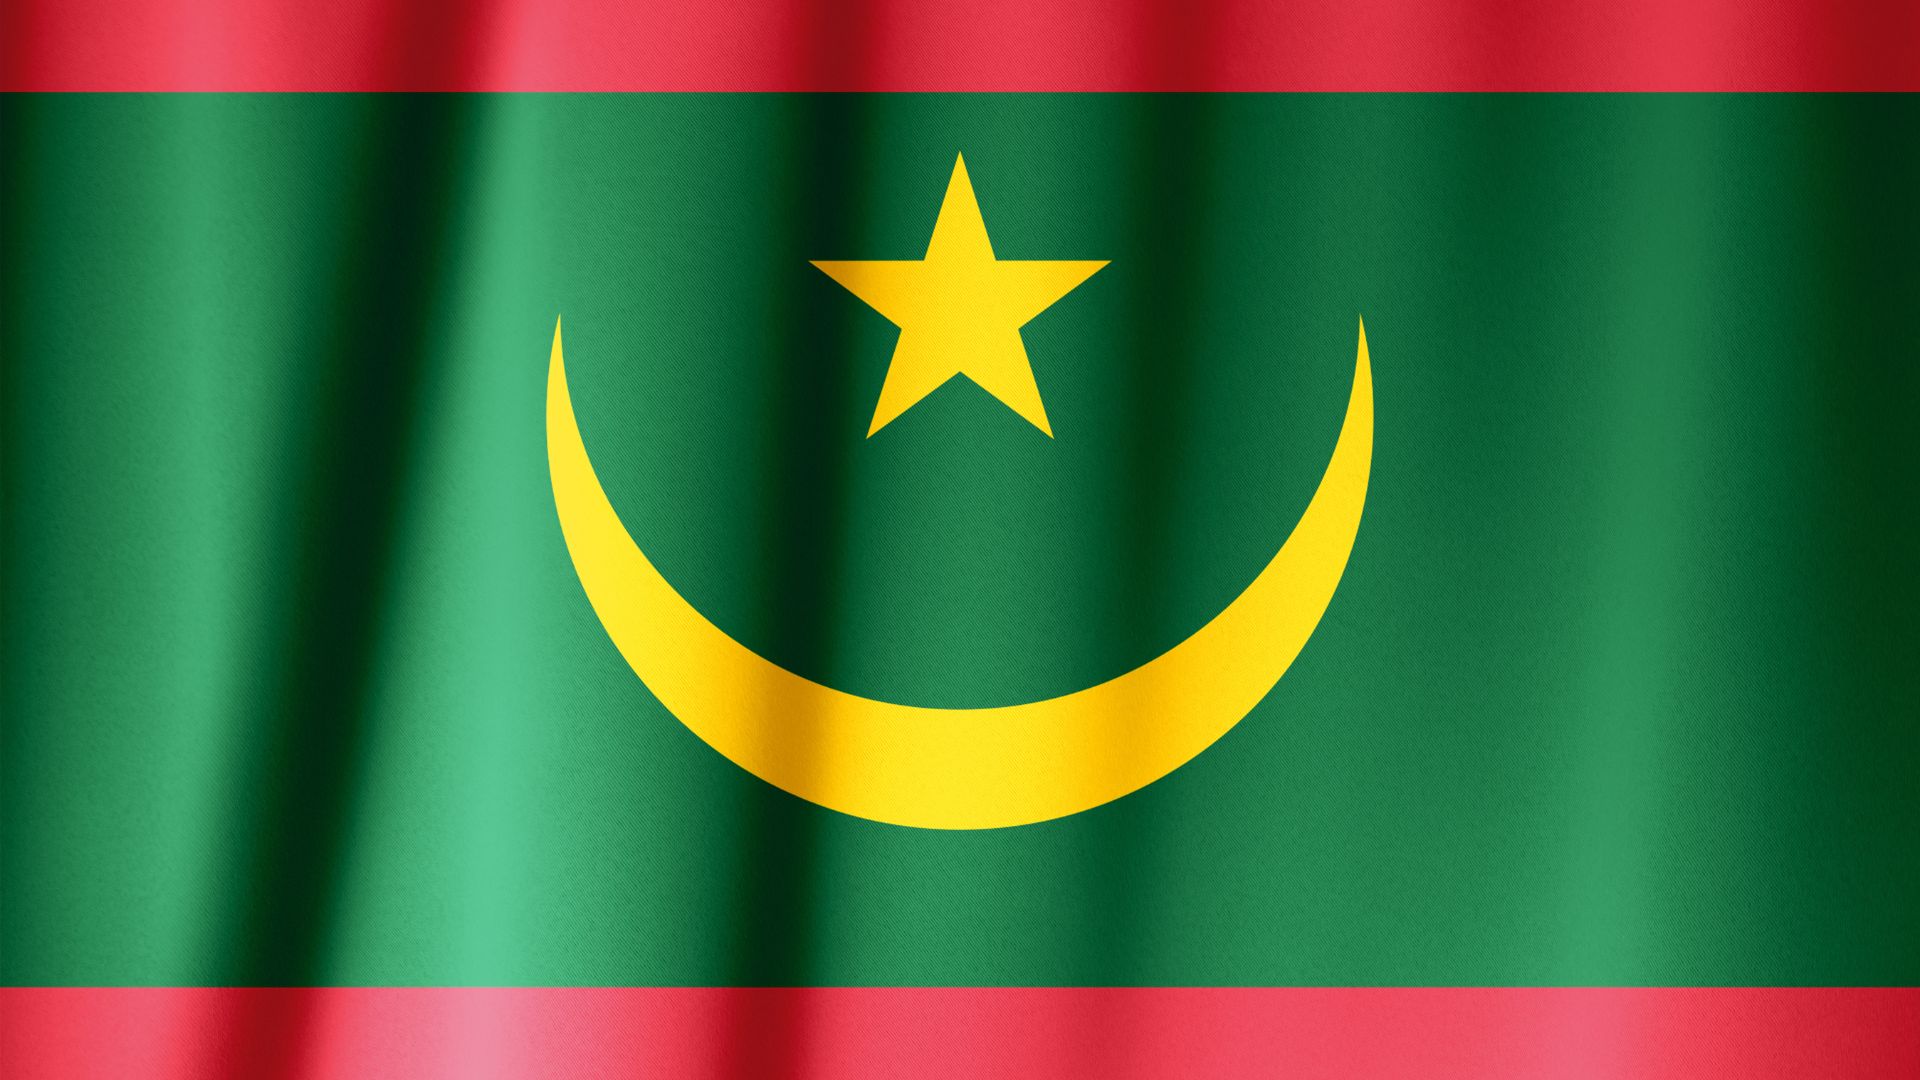 Форма флага мавритании. Флаг Мавритании. Исламская Республика Мавритания флаг. Нуакшот флаг. Флаг Мавритании 2017.